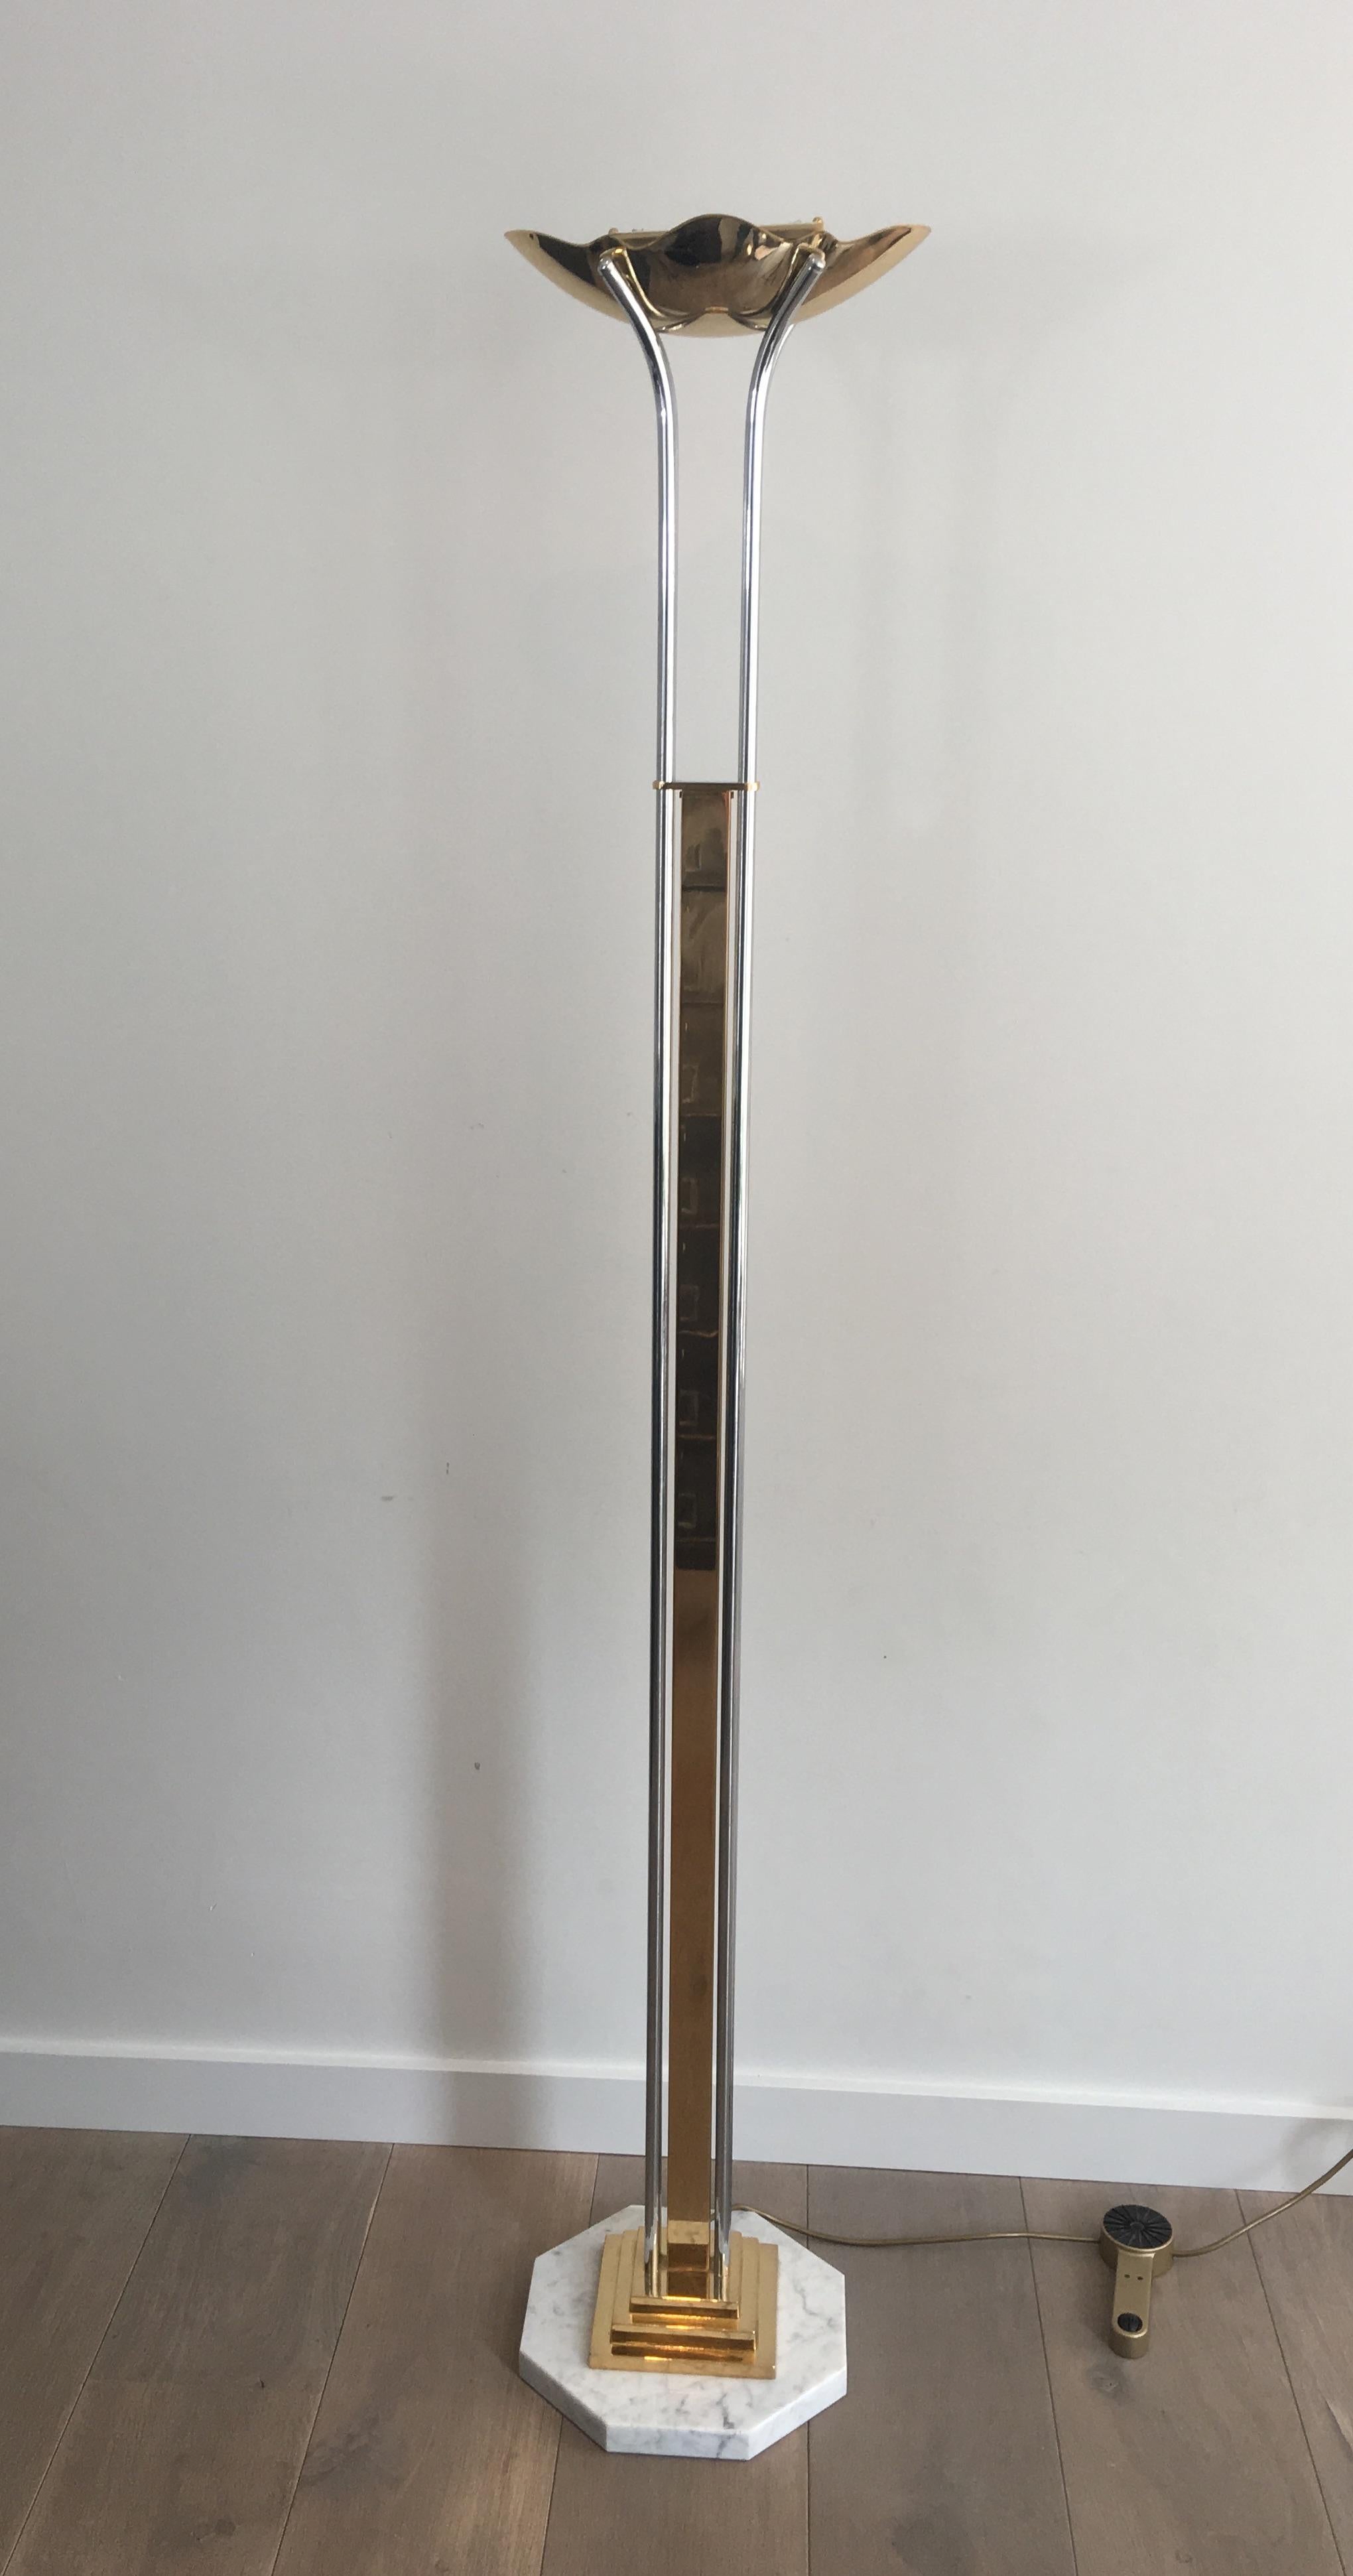 Ce lampadaire insolite et élégant est composé de laiton doré et de chrome sur une base octogonale en marbre. Le sommet ressemble à une fleur ouverte. Cette lampe est française, vers 1970.